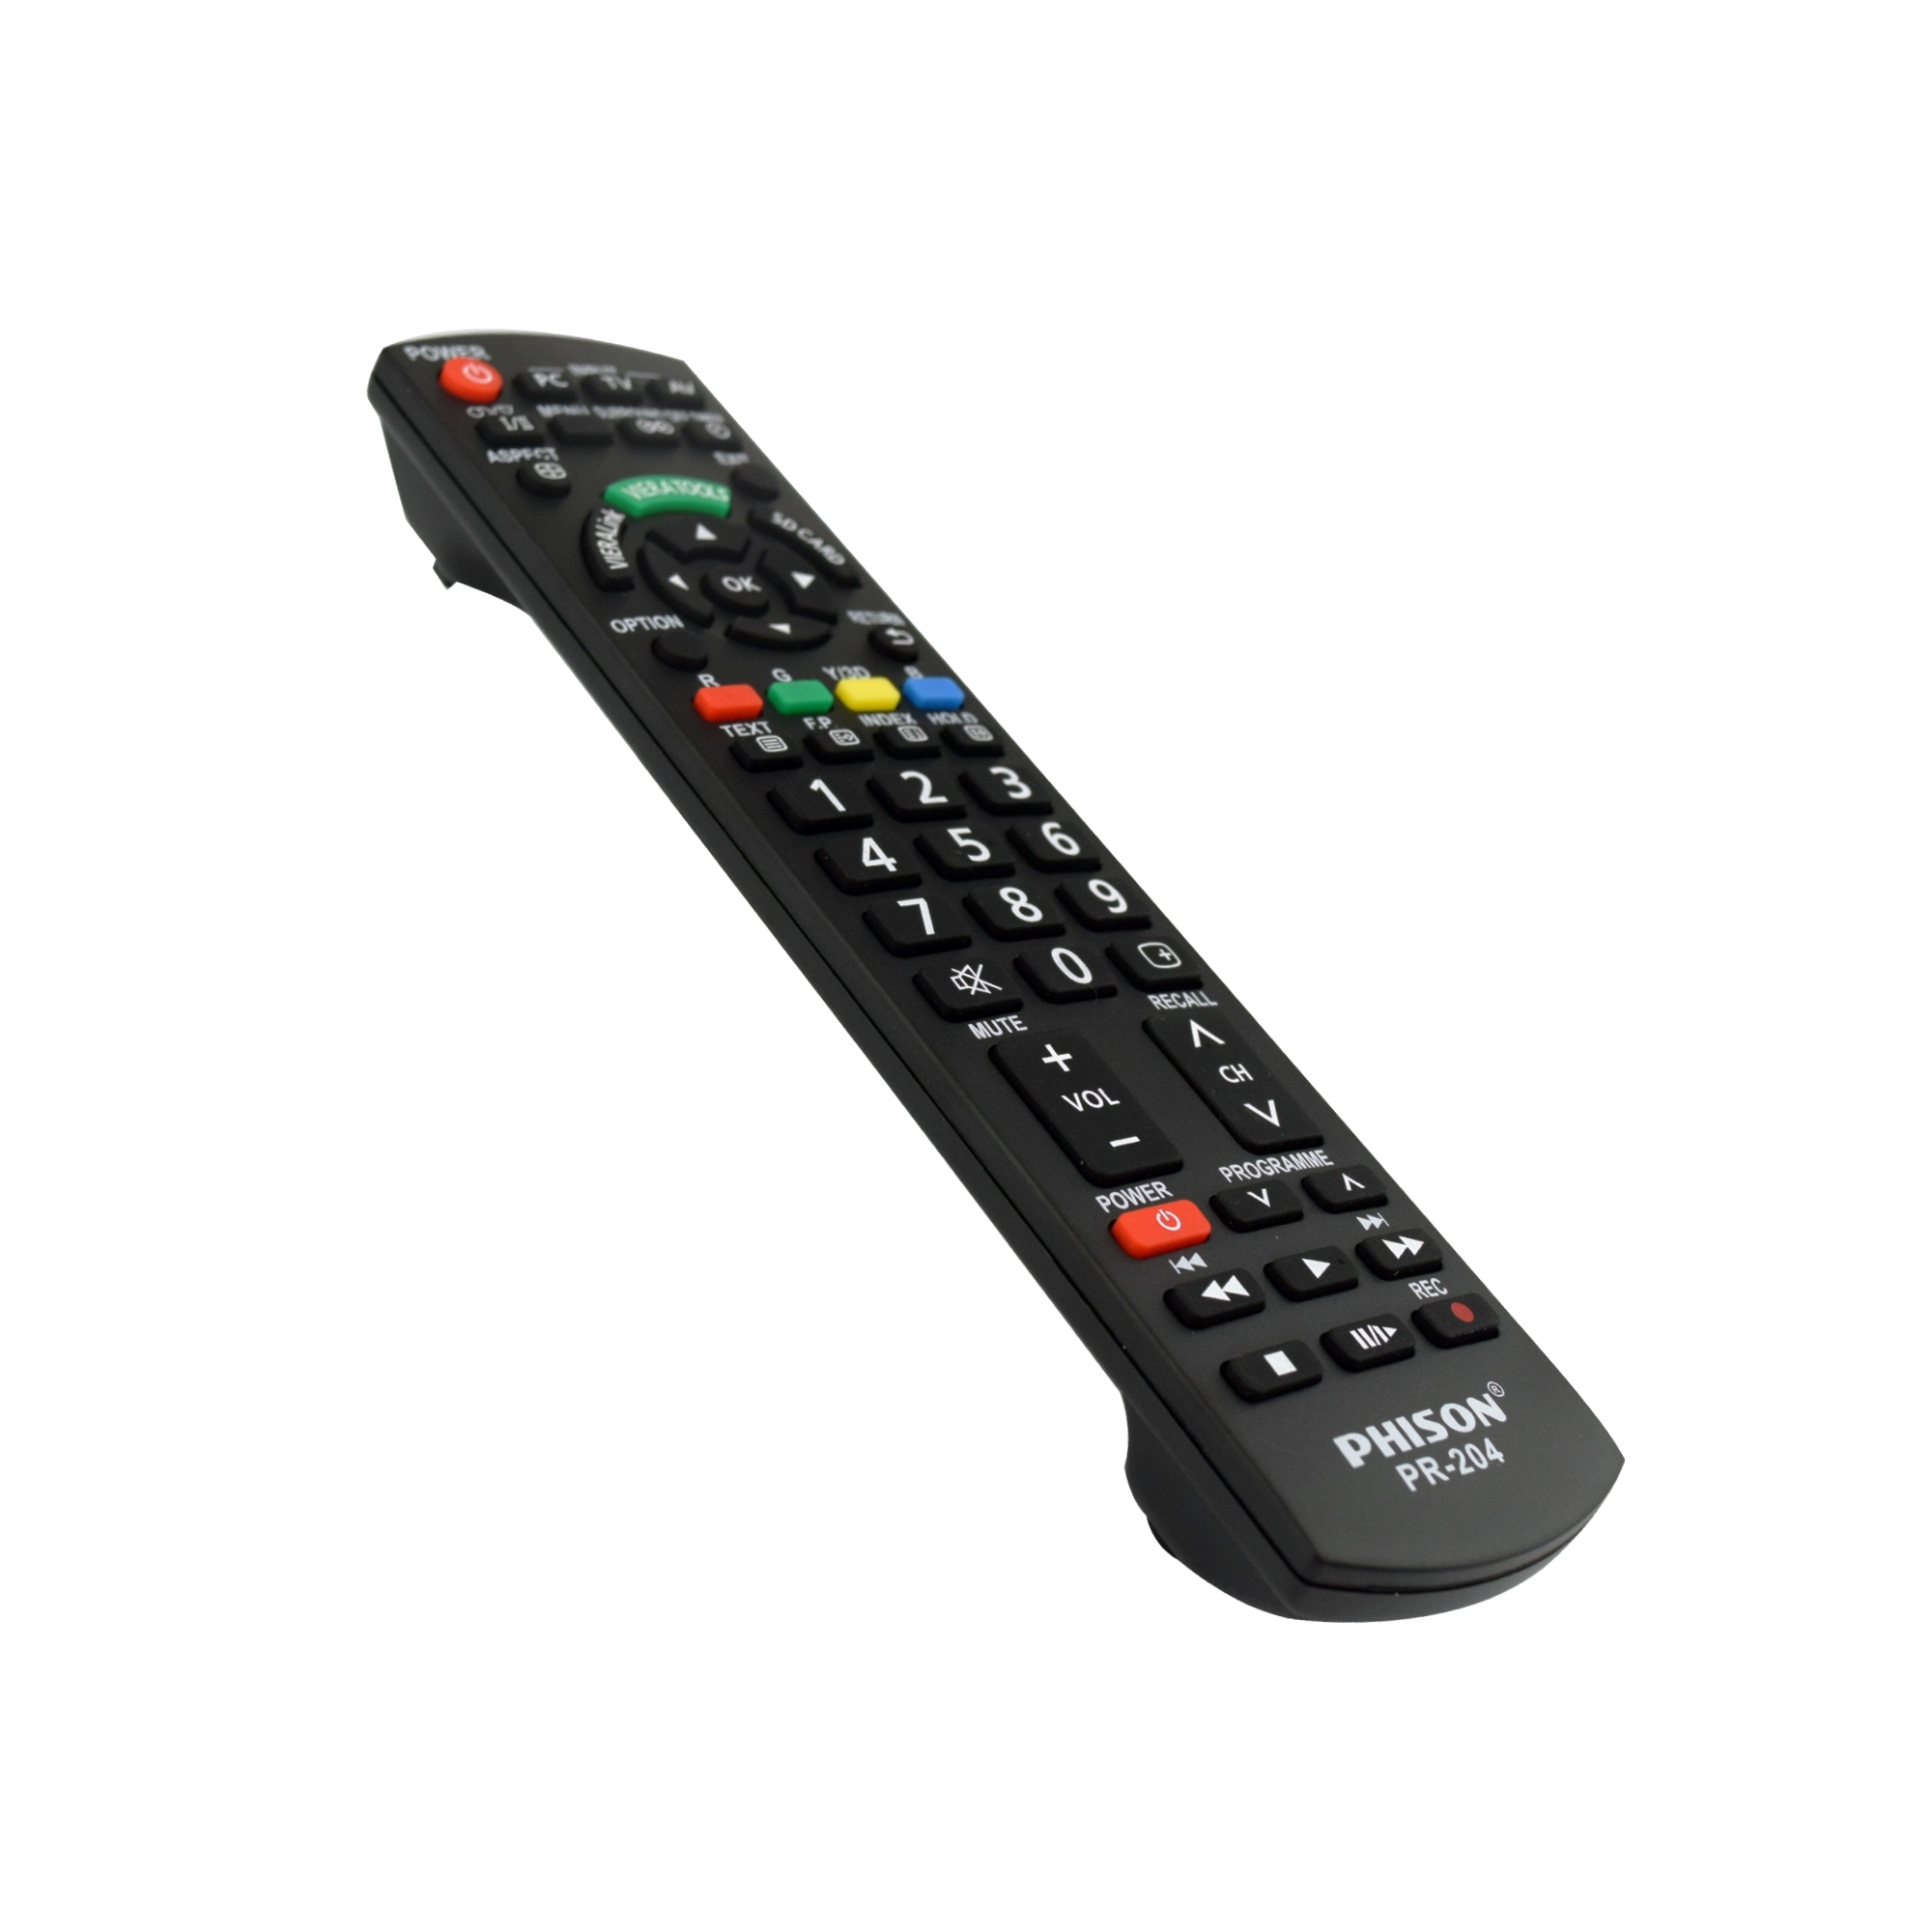 Generic Panasonic TV Remote Control (O.E.M) PR-204